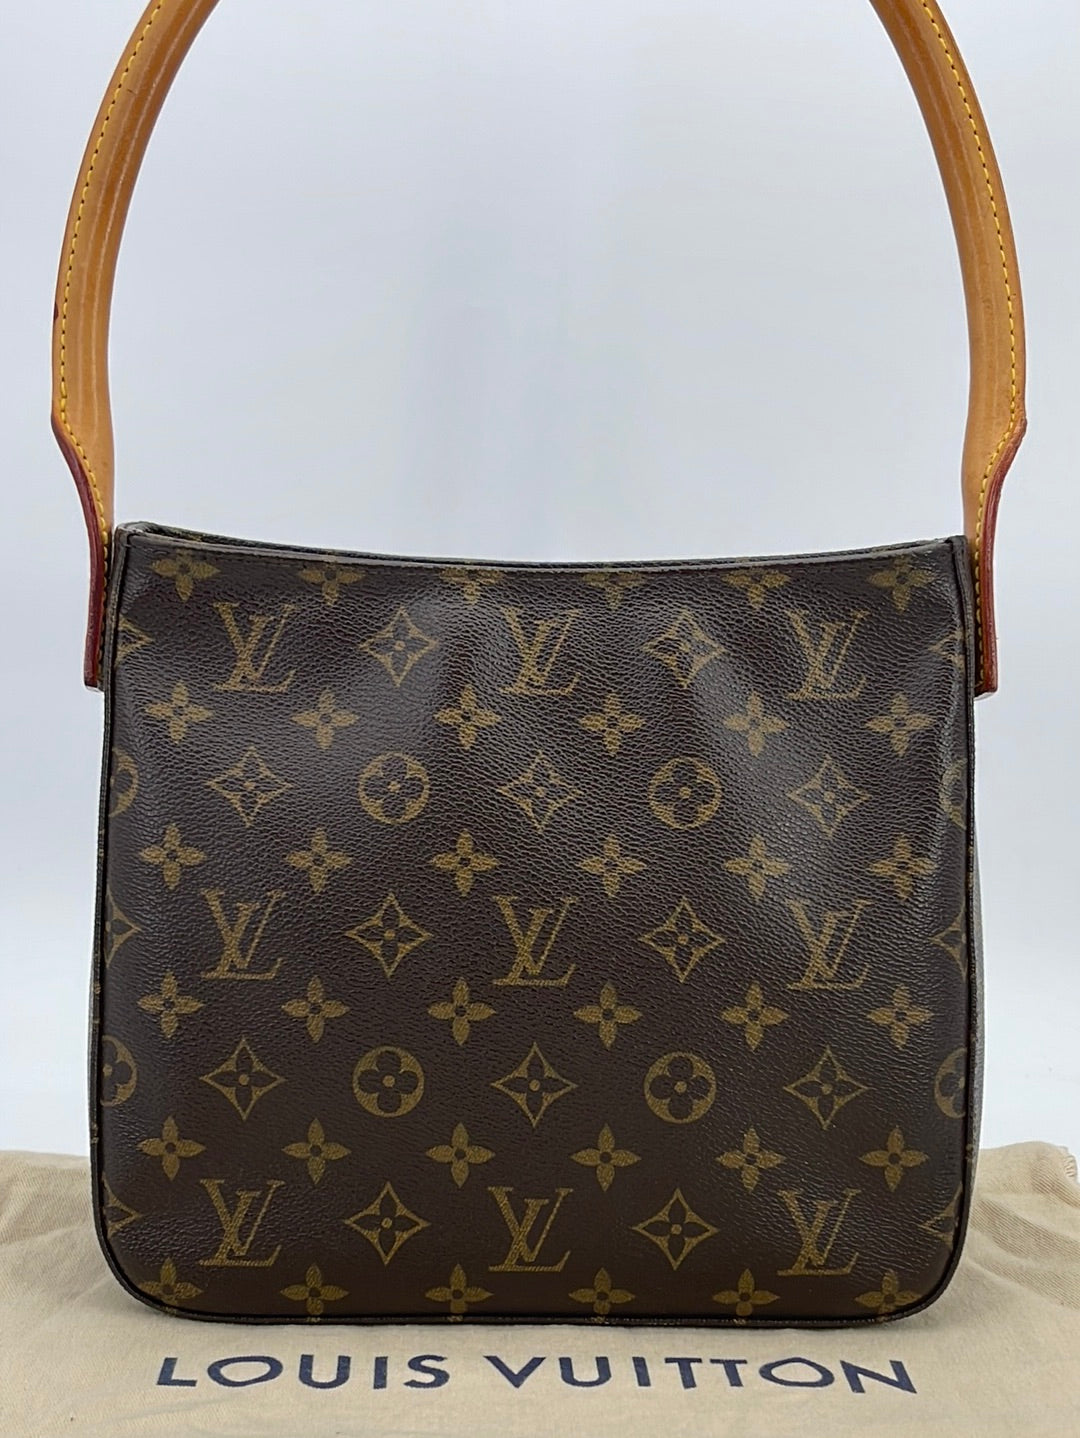 Vintage Louis Vuitton MM Tote